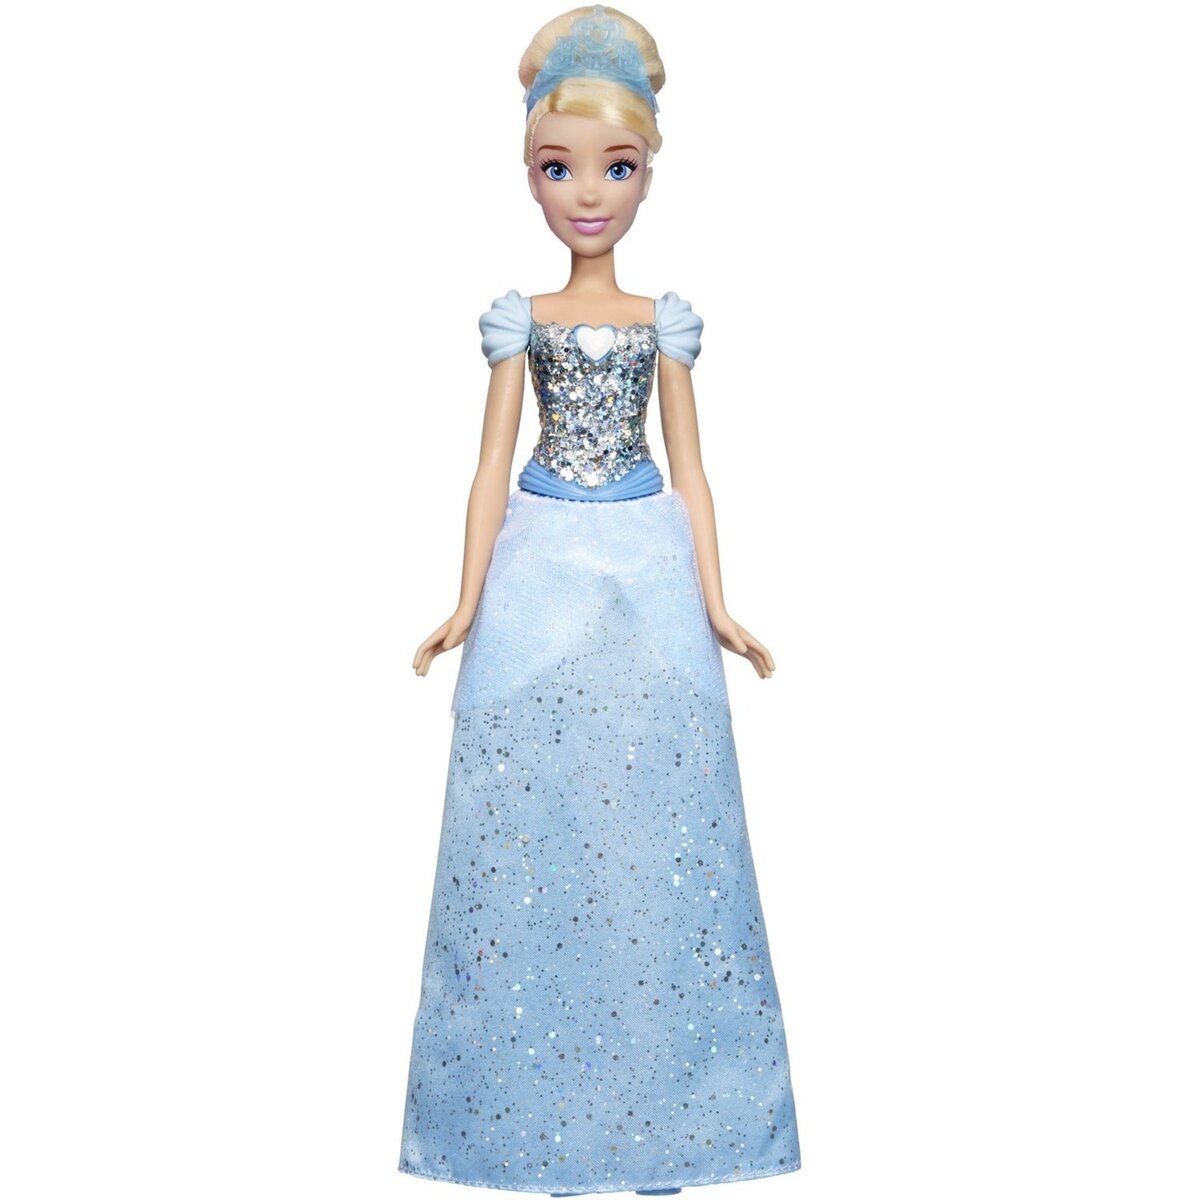 Blanche Neige - Poussière d'étoiles - Disney Princess